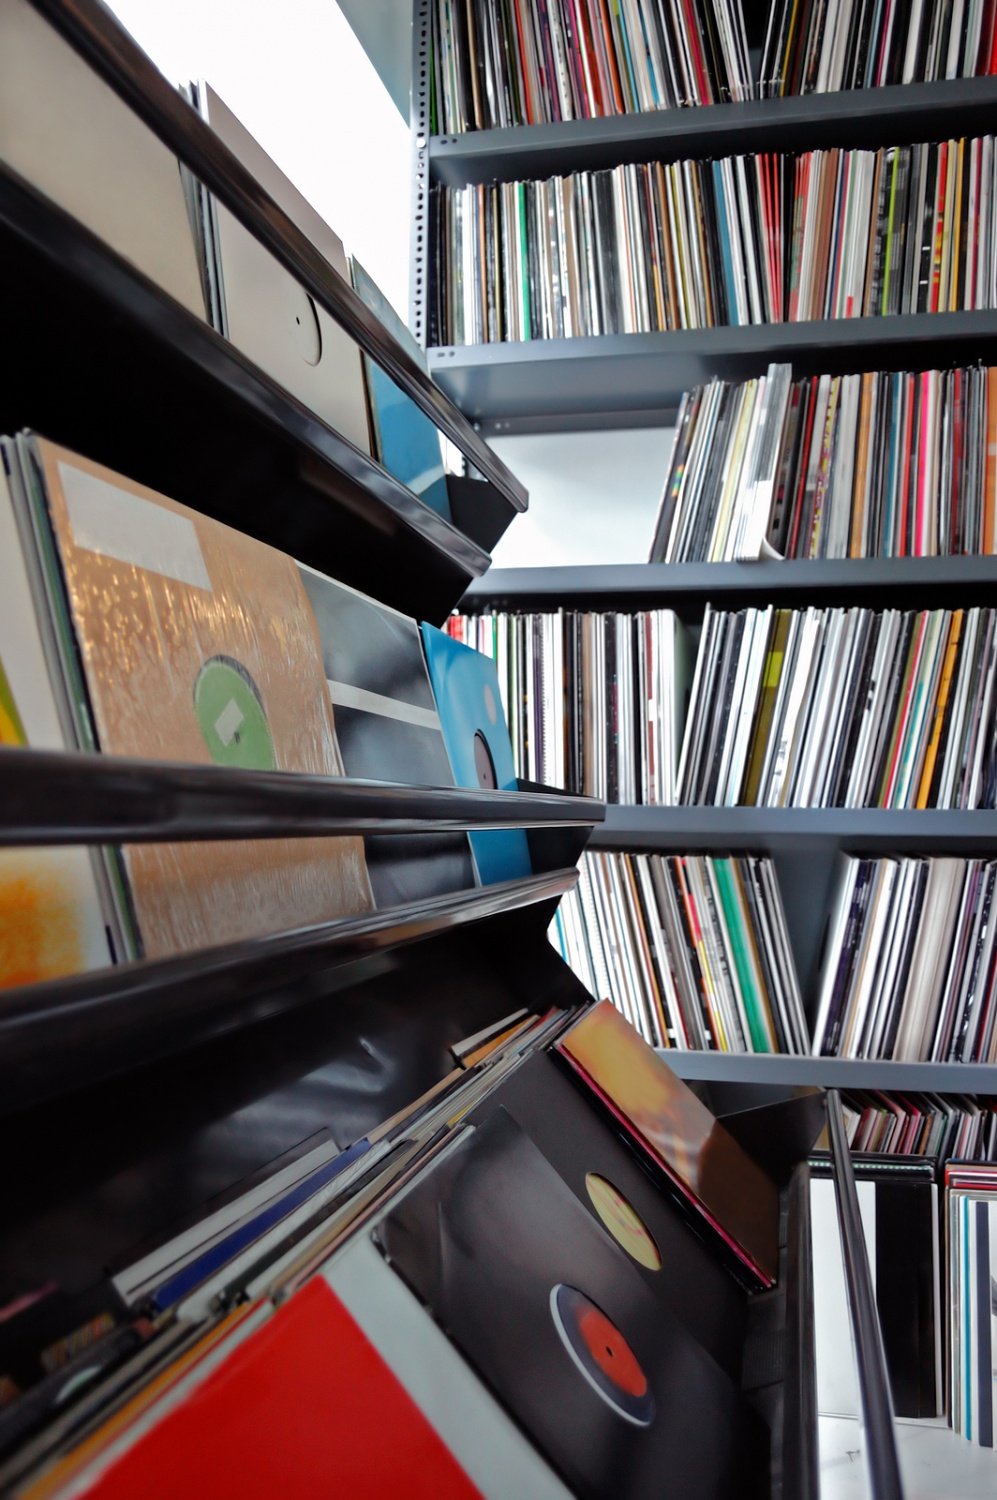 Are Vinyl Records Antique?